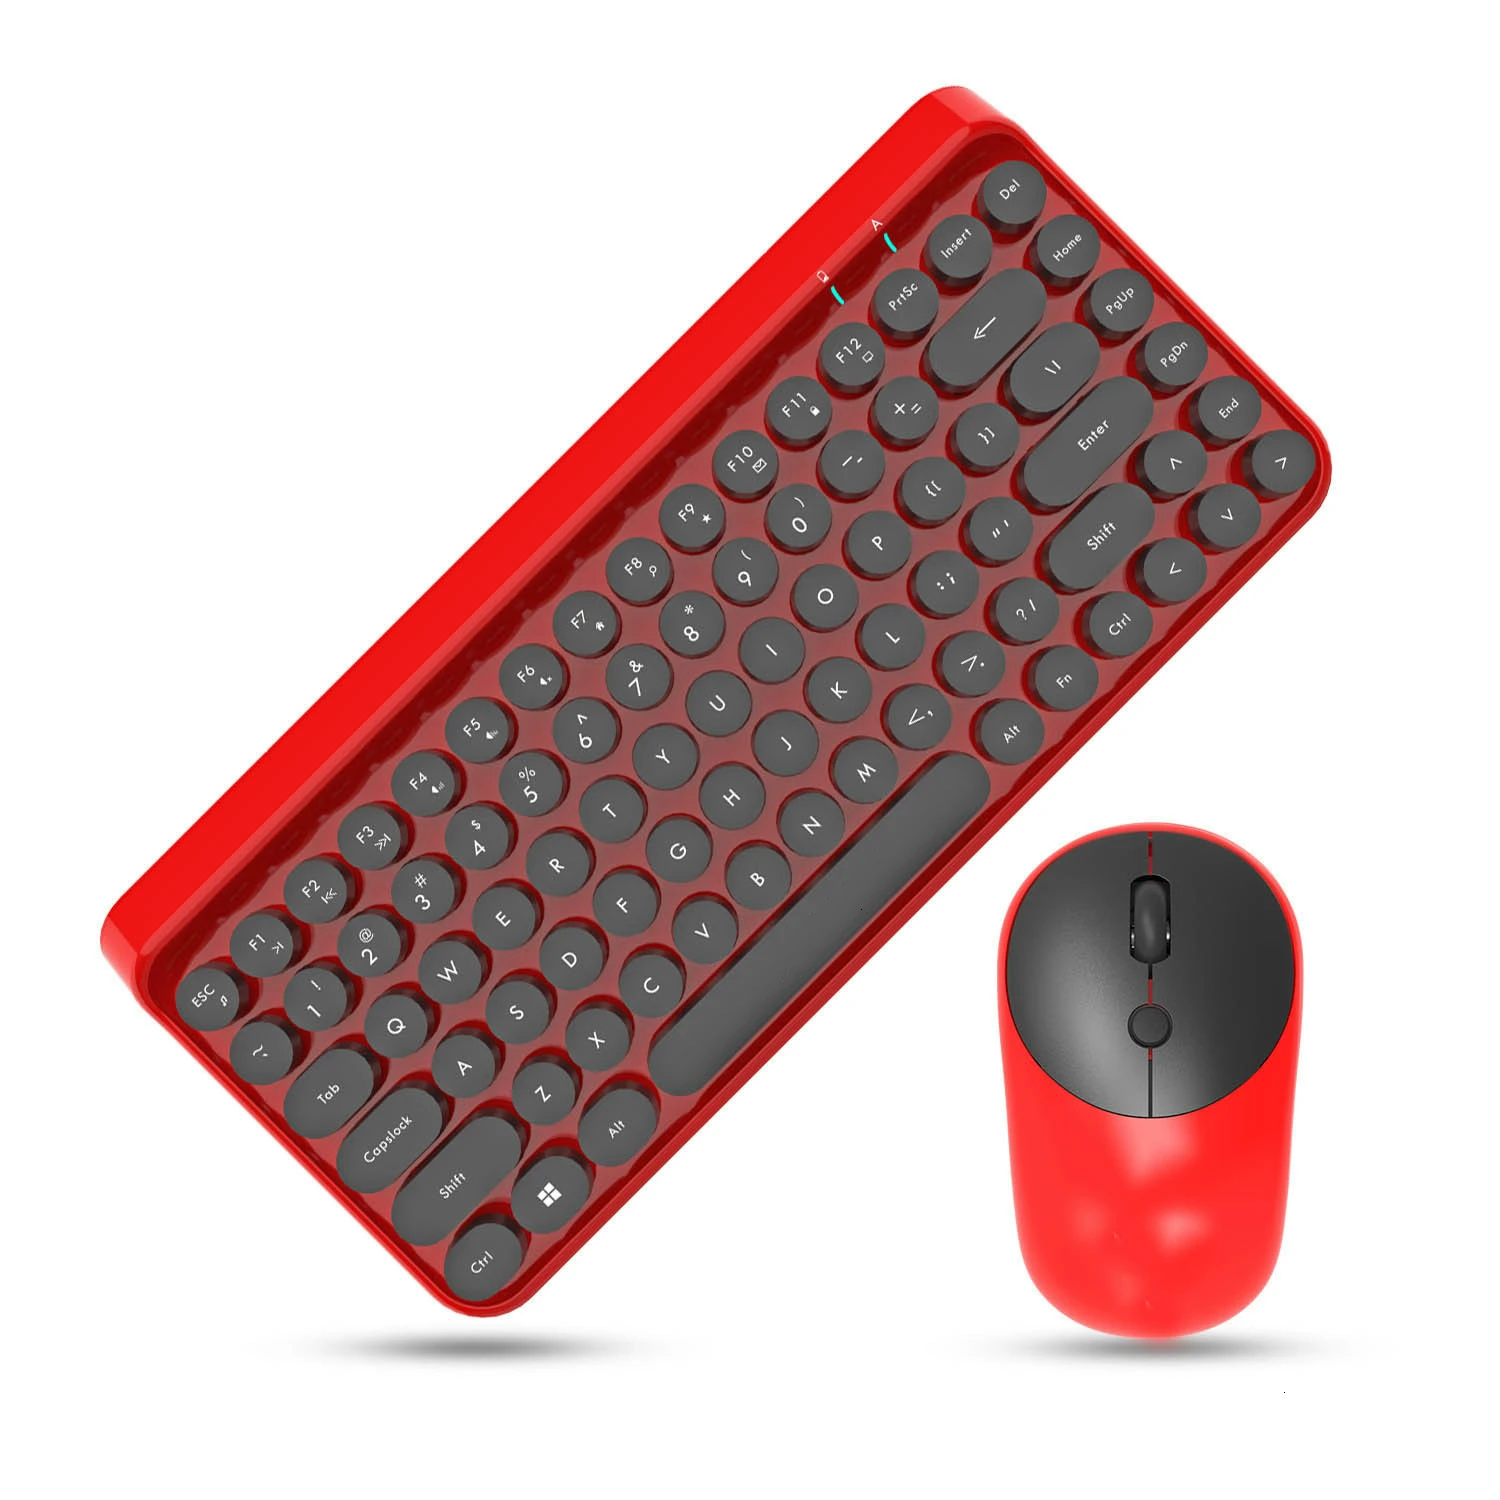 Jelly Comb 2,4G Беспроводная клавиатура и мышь для игр Офисная Клавиатура и мышь набор Портативная USB клавиатура для ноутбука ПК компьютера - Цвет: Красный